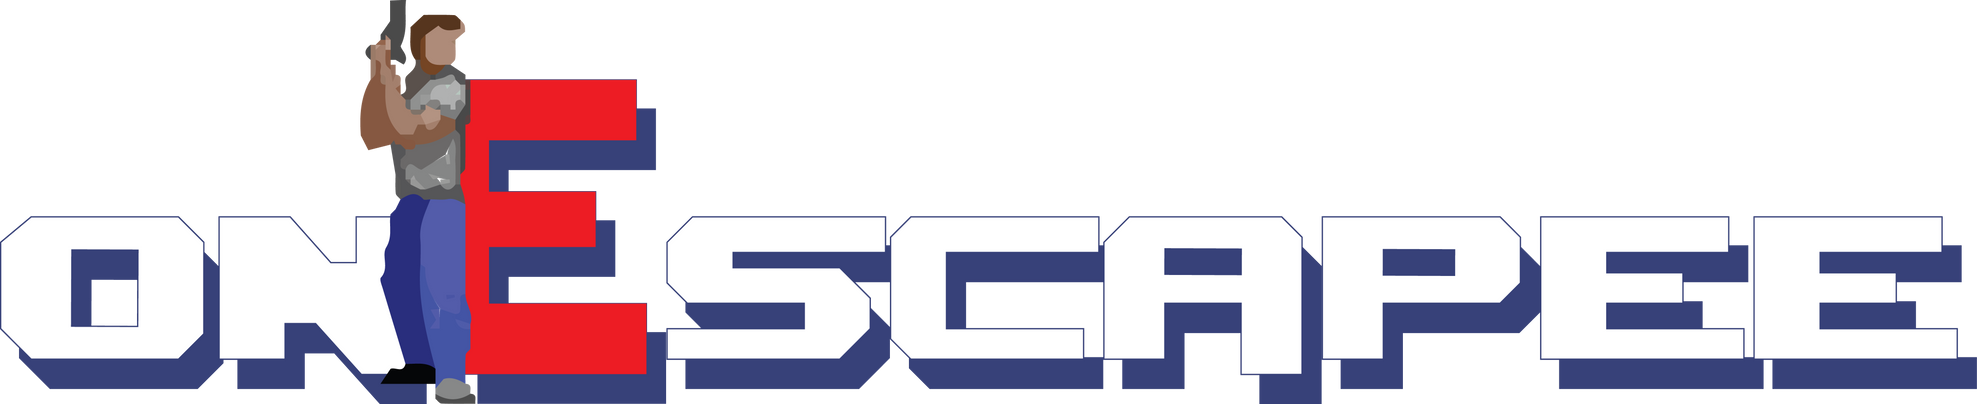 onEscapee Logo